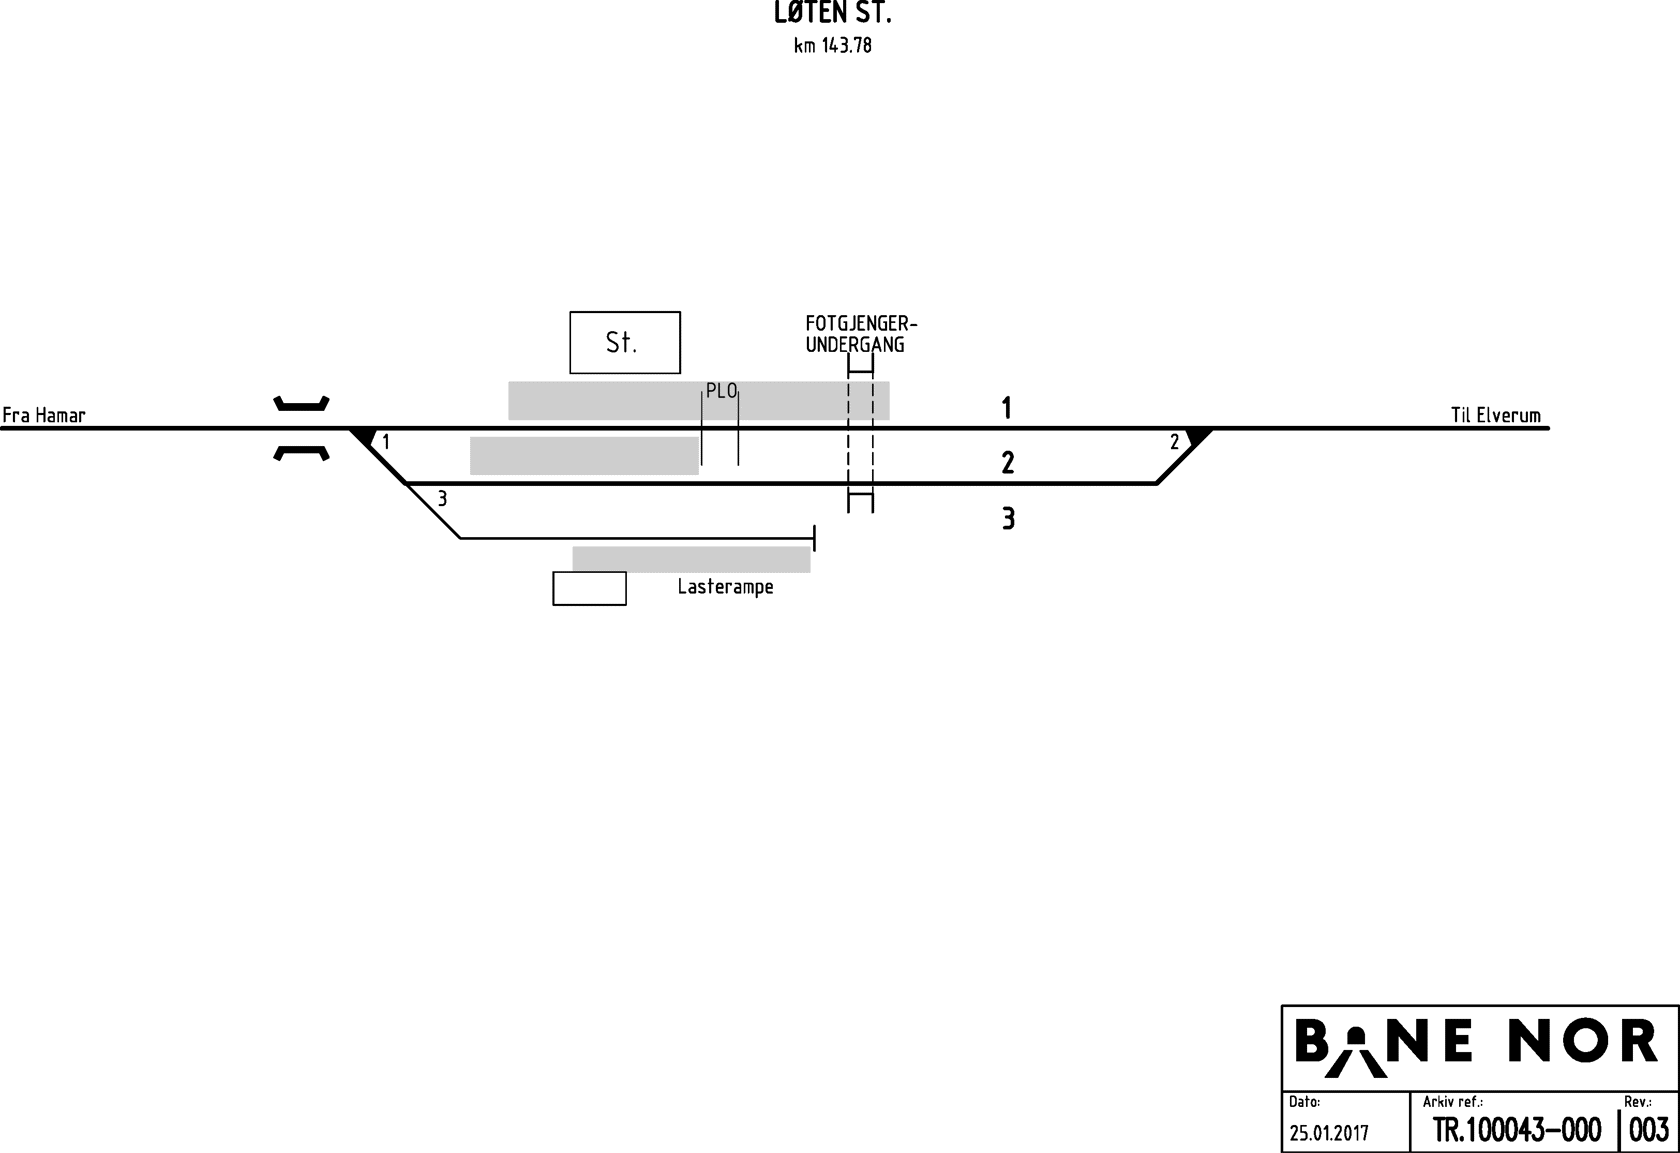 Track plan Løten station